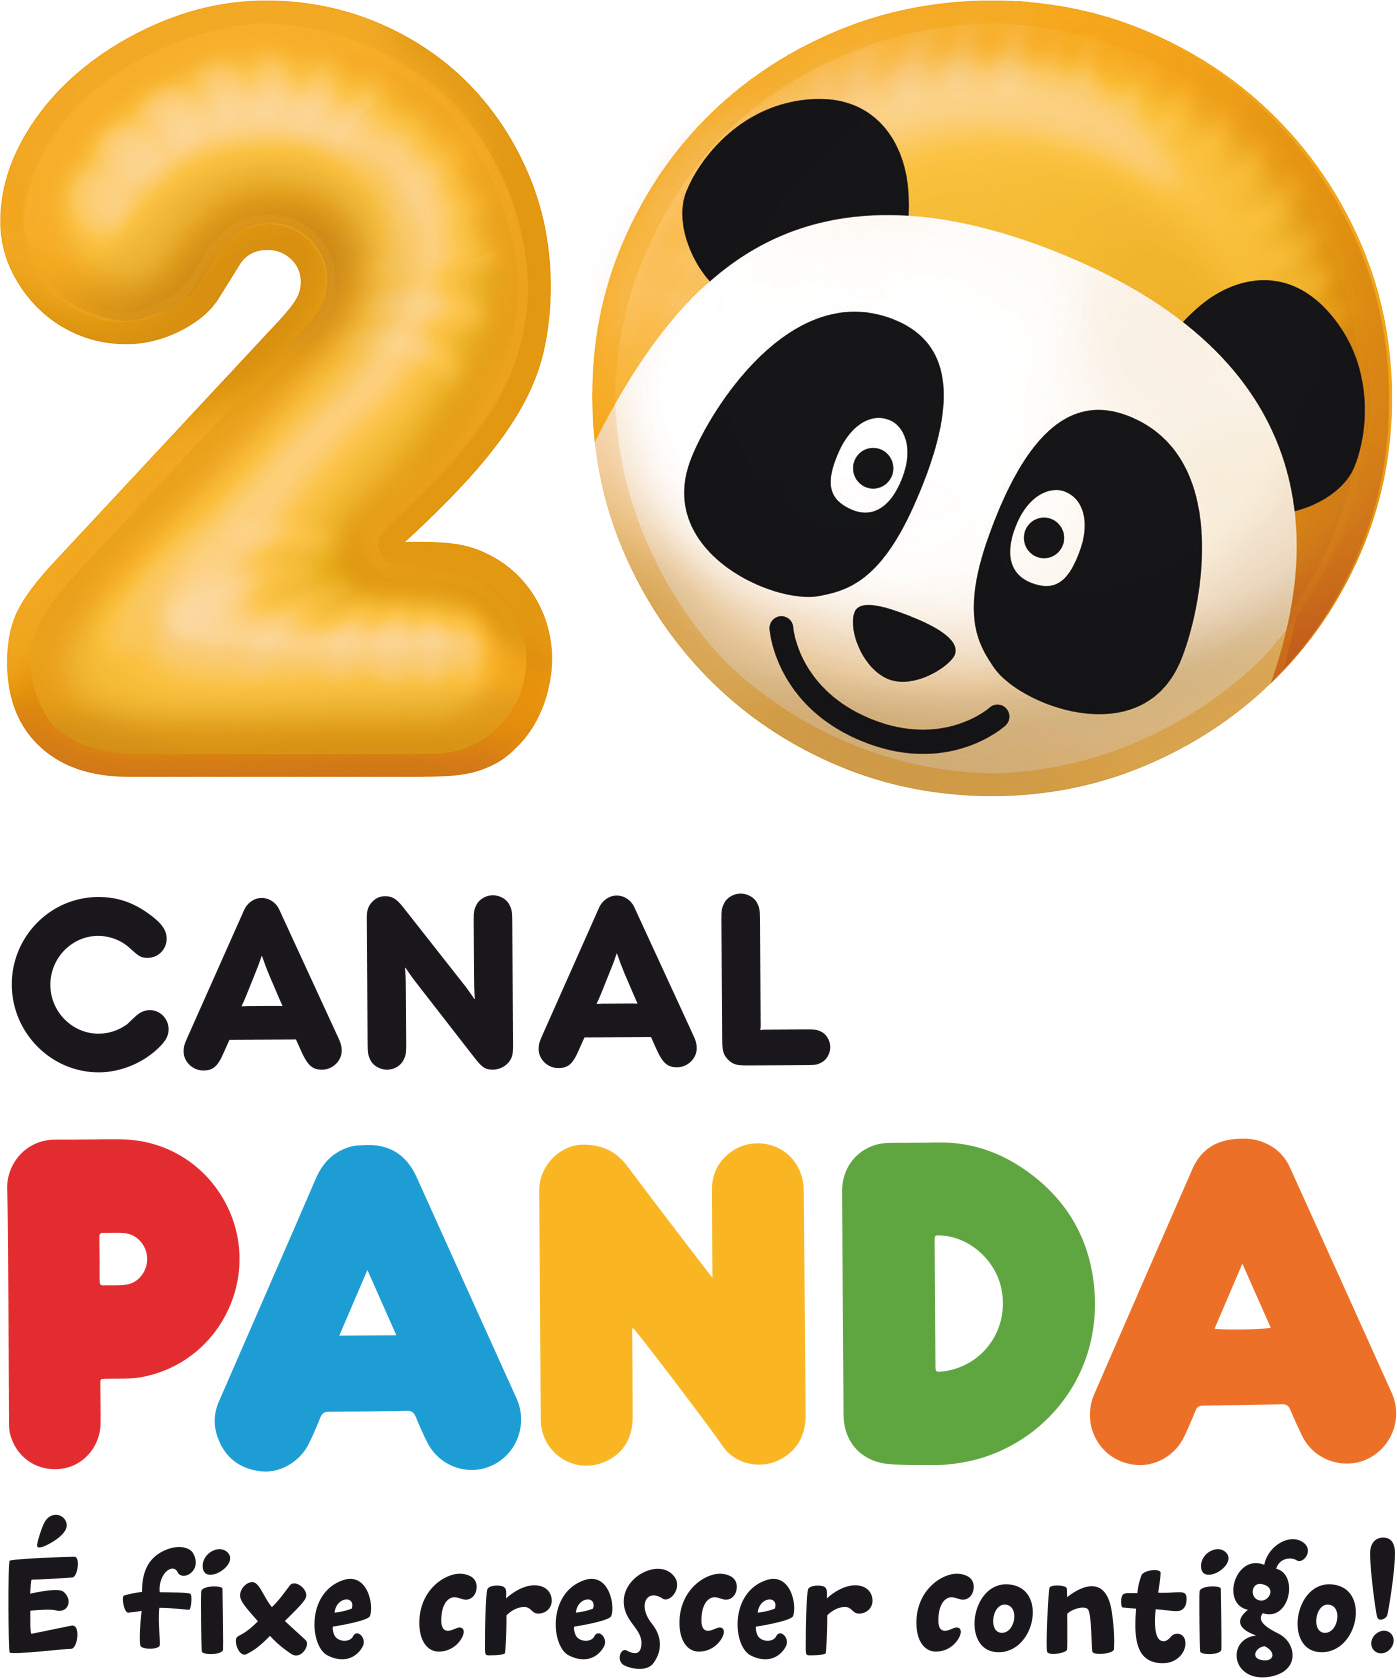 Lista de programas do Canal Panda – Wikipédia, a enciclopédia livre